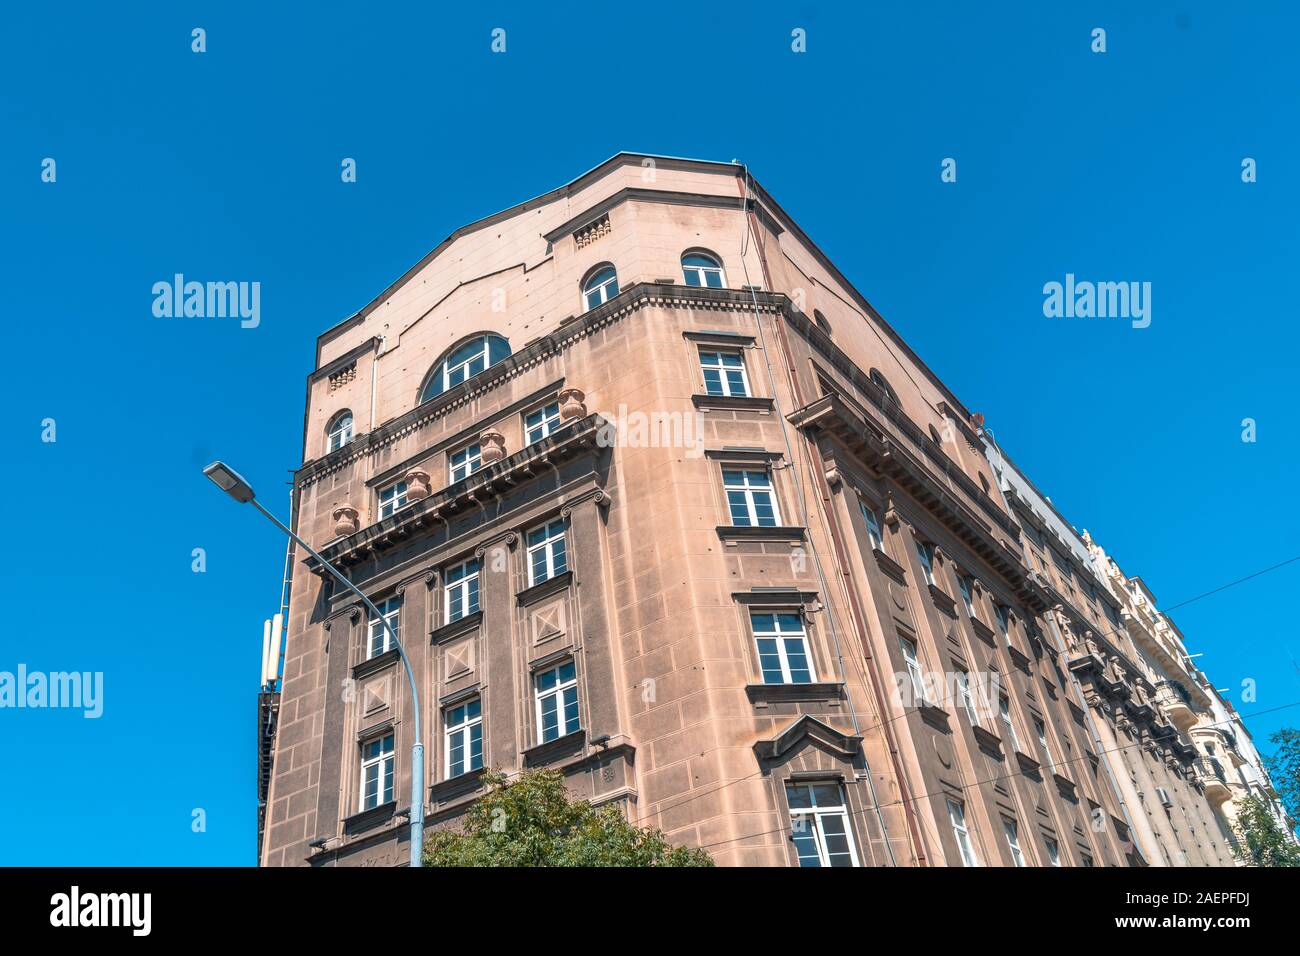 Belgrado, Serbia - 10 agosto 2019 : architettura edifici in città con bullet contrassegni. Belgrado è popolare destinazione turistica in Serbia. Foto Stock